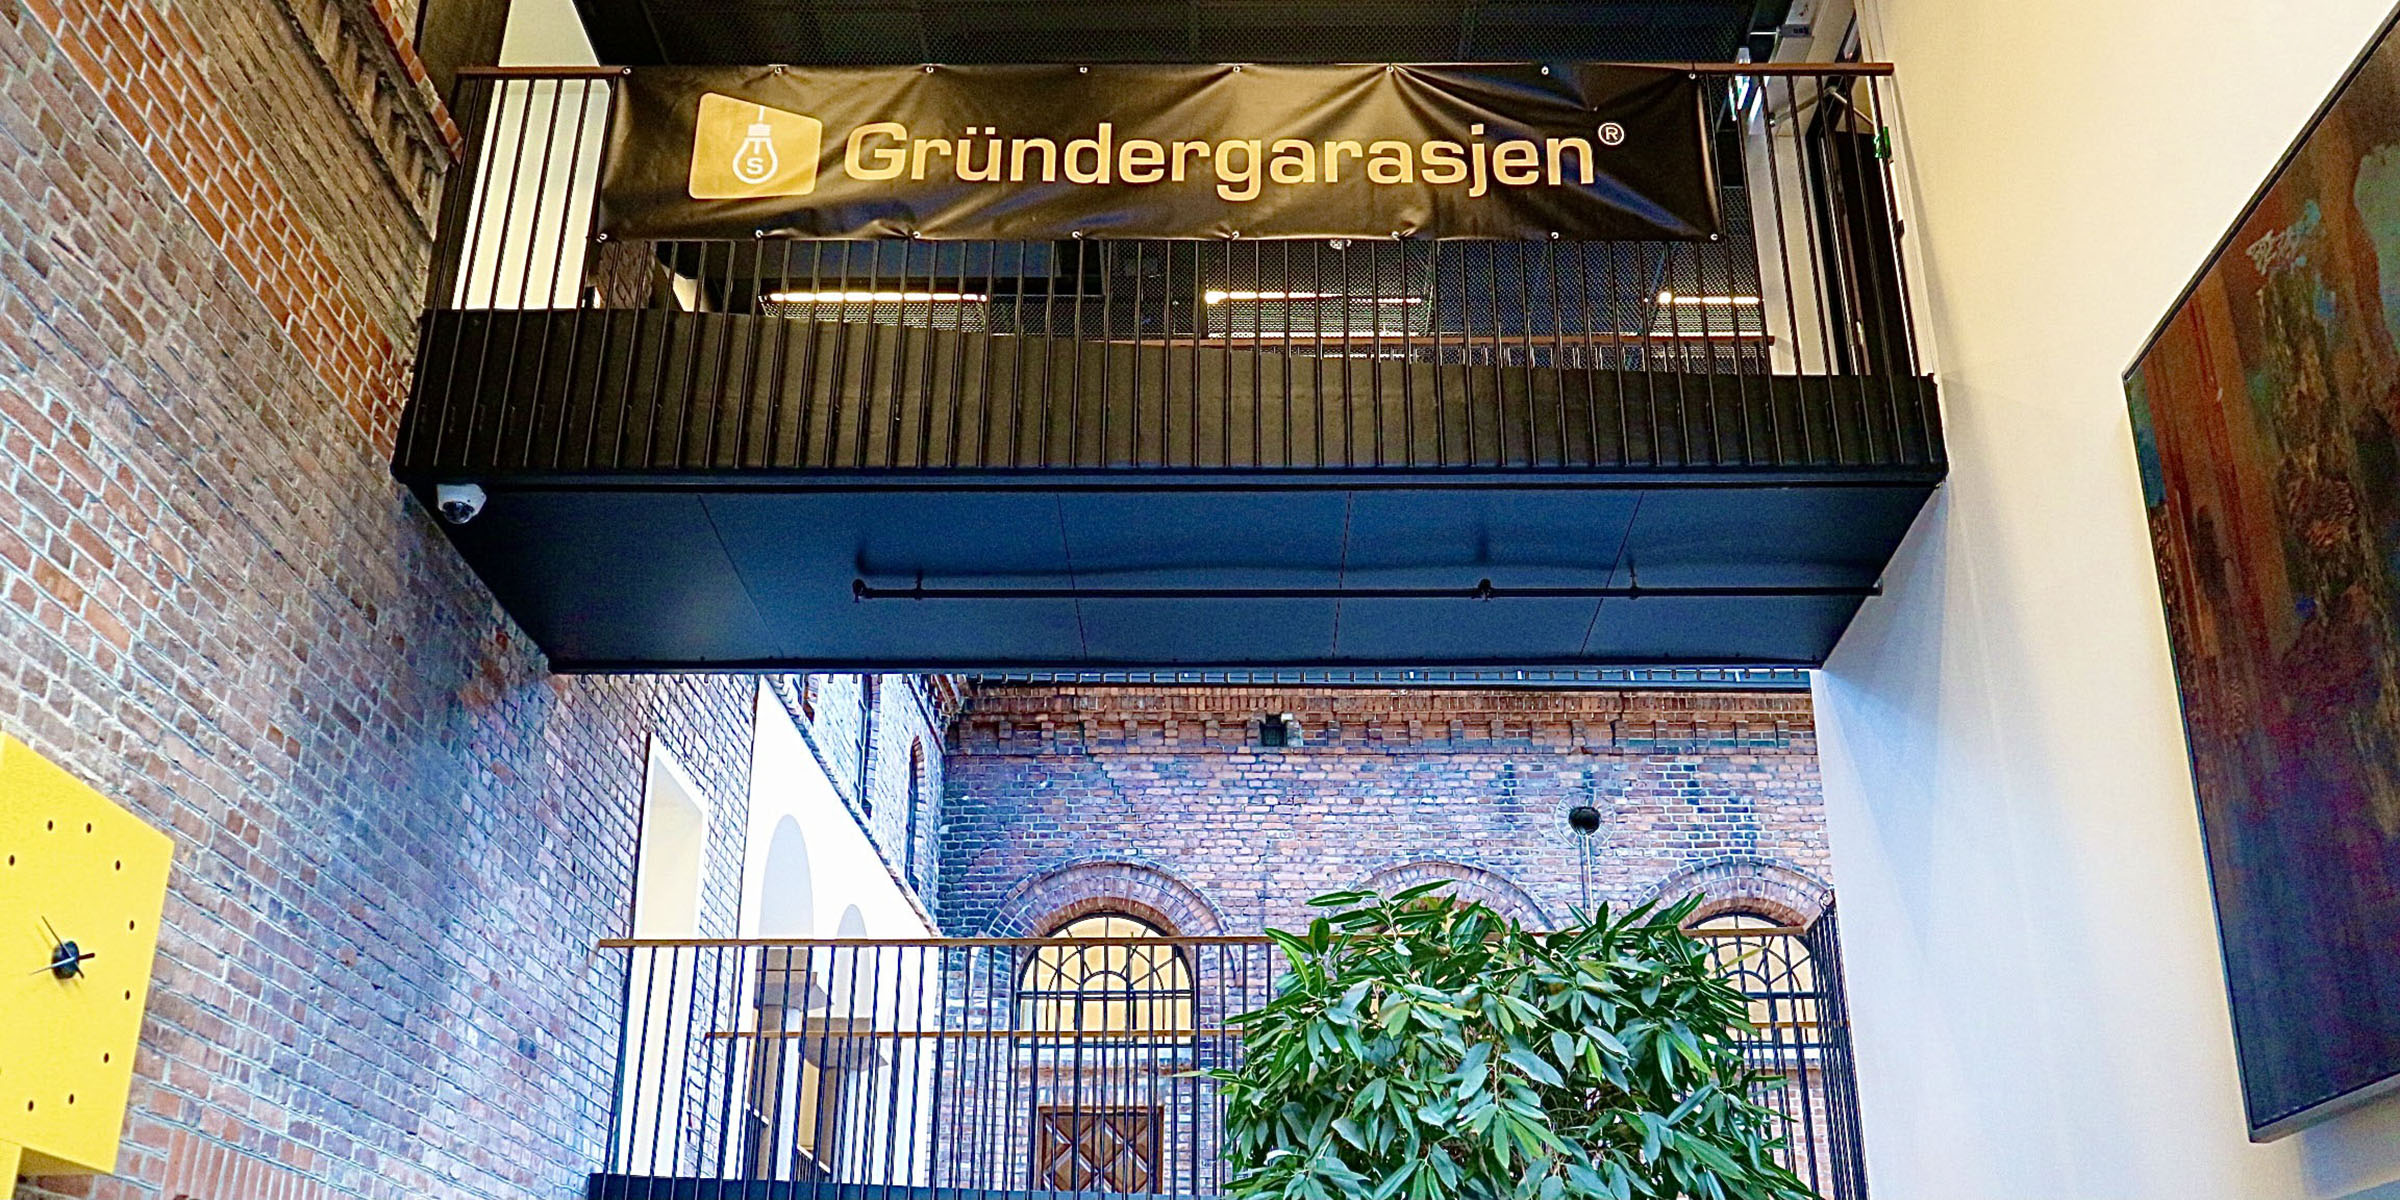 Bildet viser et banner med Gründergarasjen festet på en gangbro øverst i et rom der det er høyt under taket. Det er vegger av murstein til venstre og bak, og nederst kan vi se en plante og en klokke. Store vinduer slipper inn mye lys.